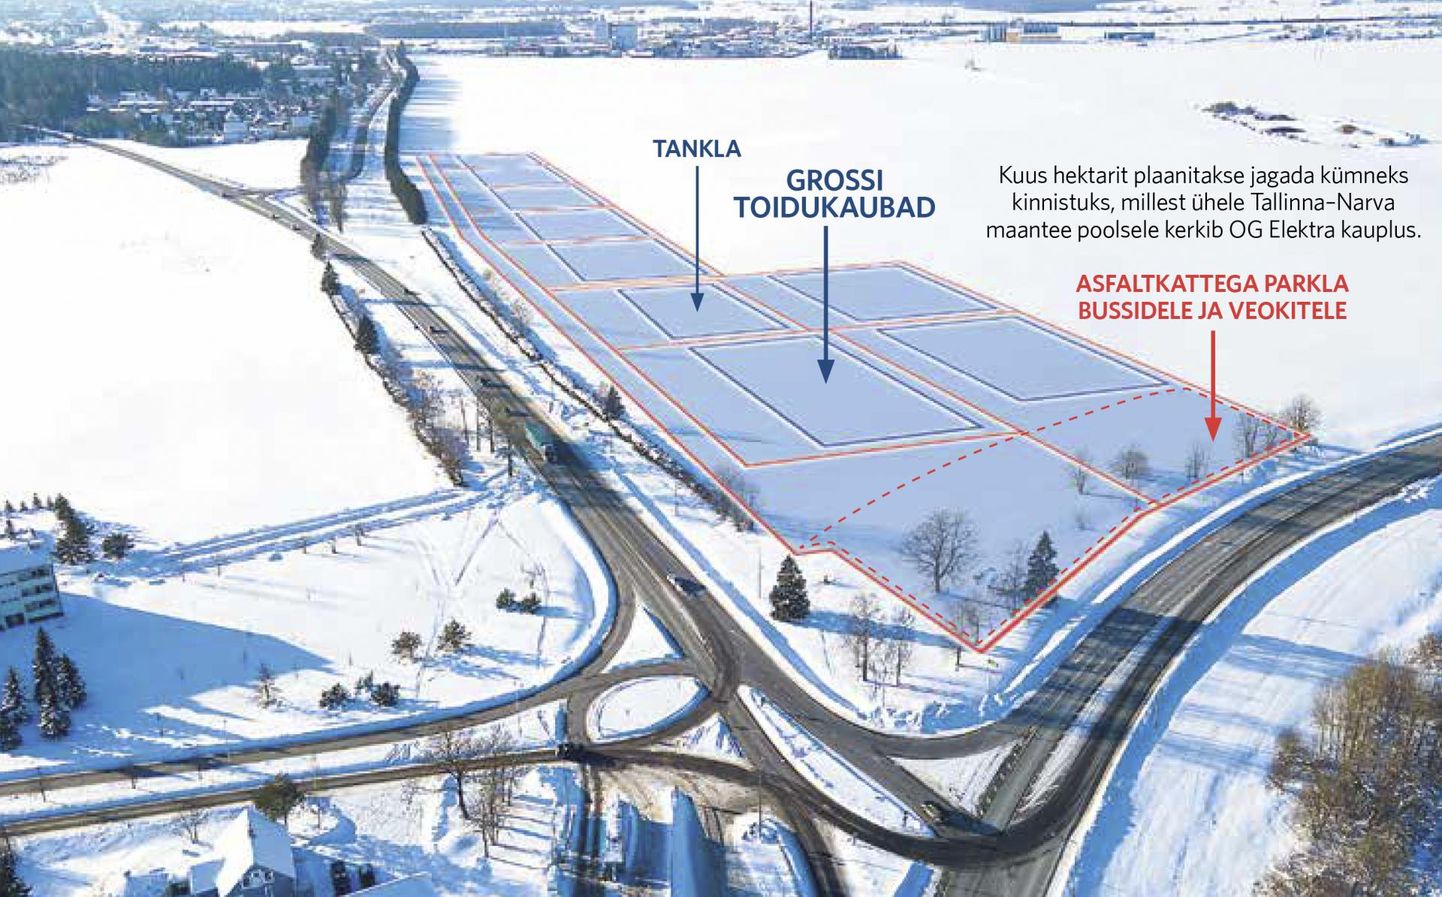 Kuus hektarit plaanitakse jagada kümneks kinnistuks, millest ühele Tallinna-Narva maantee poolsele kerkib OG Elektra kauplus.